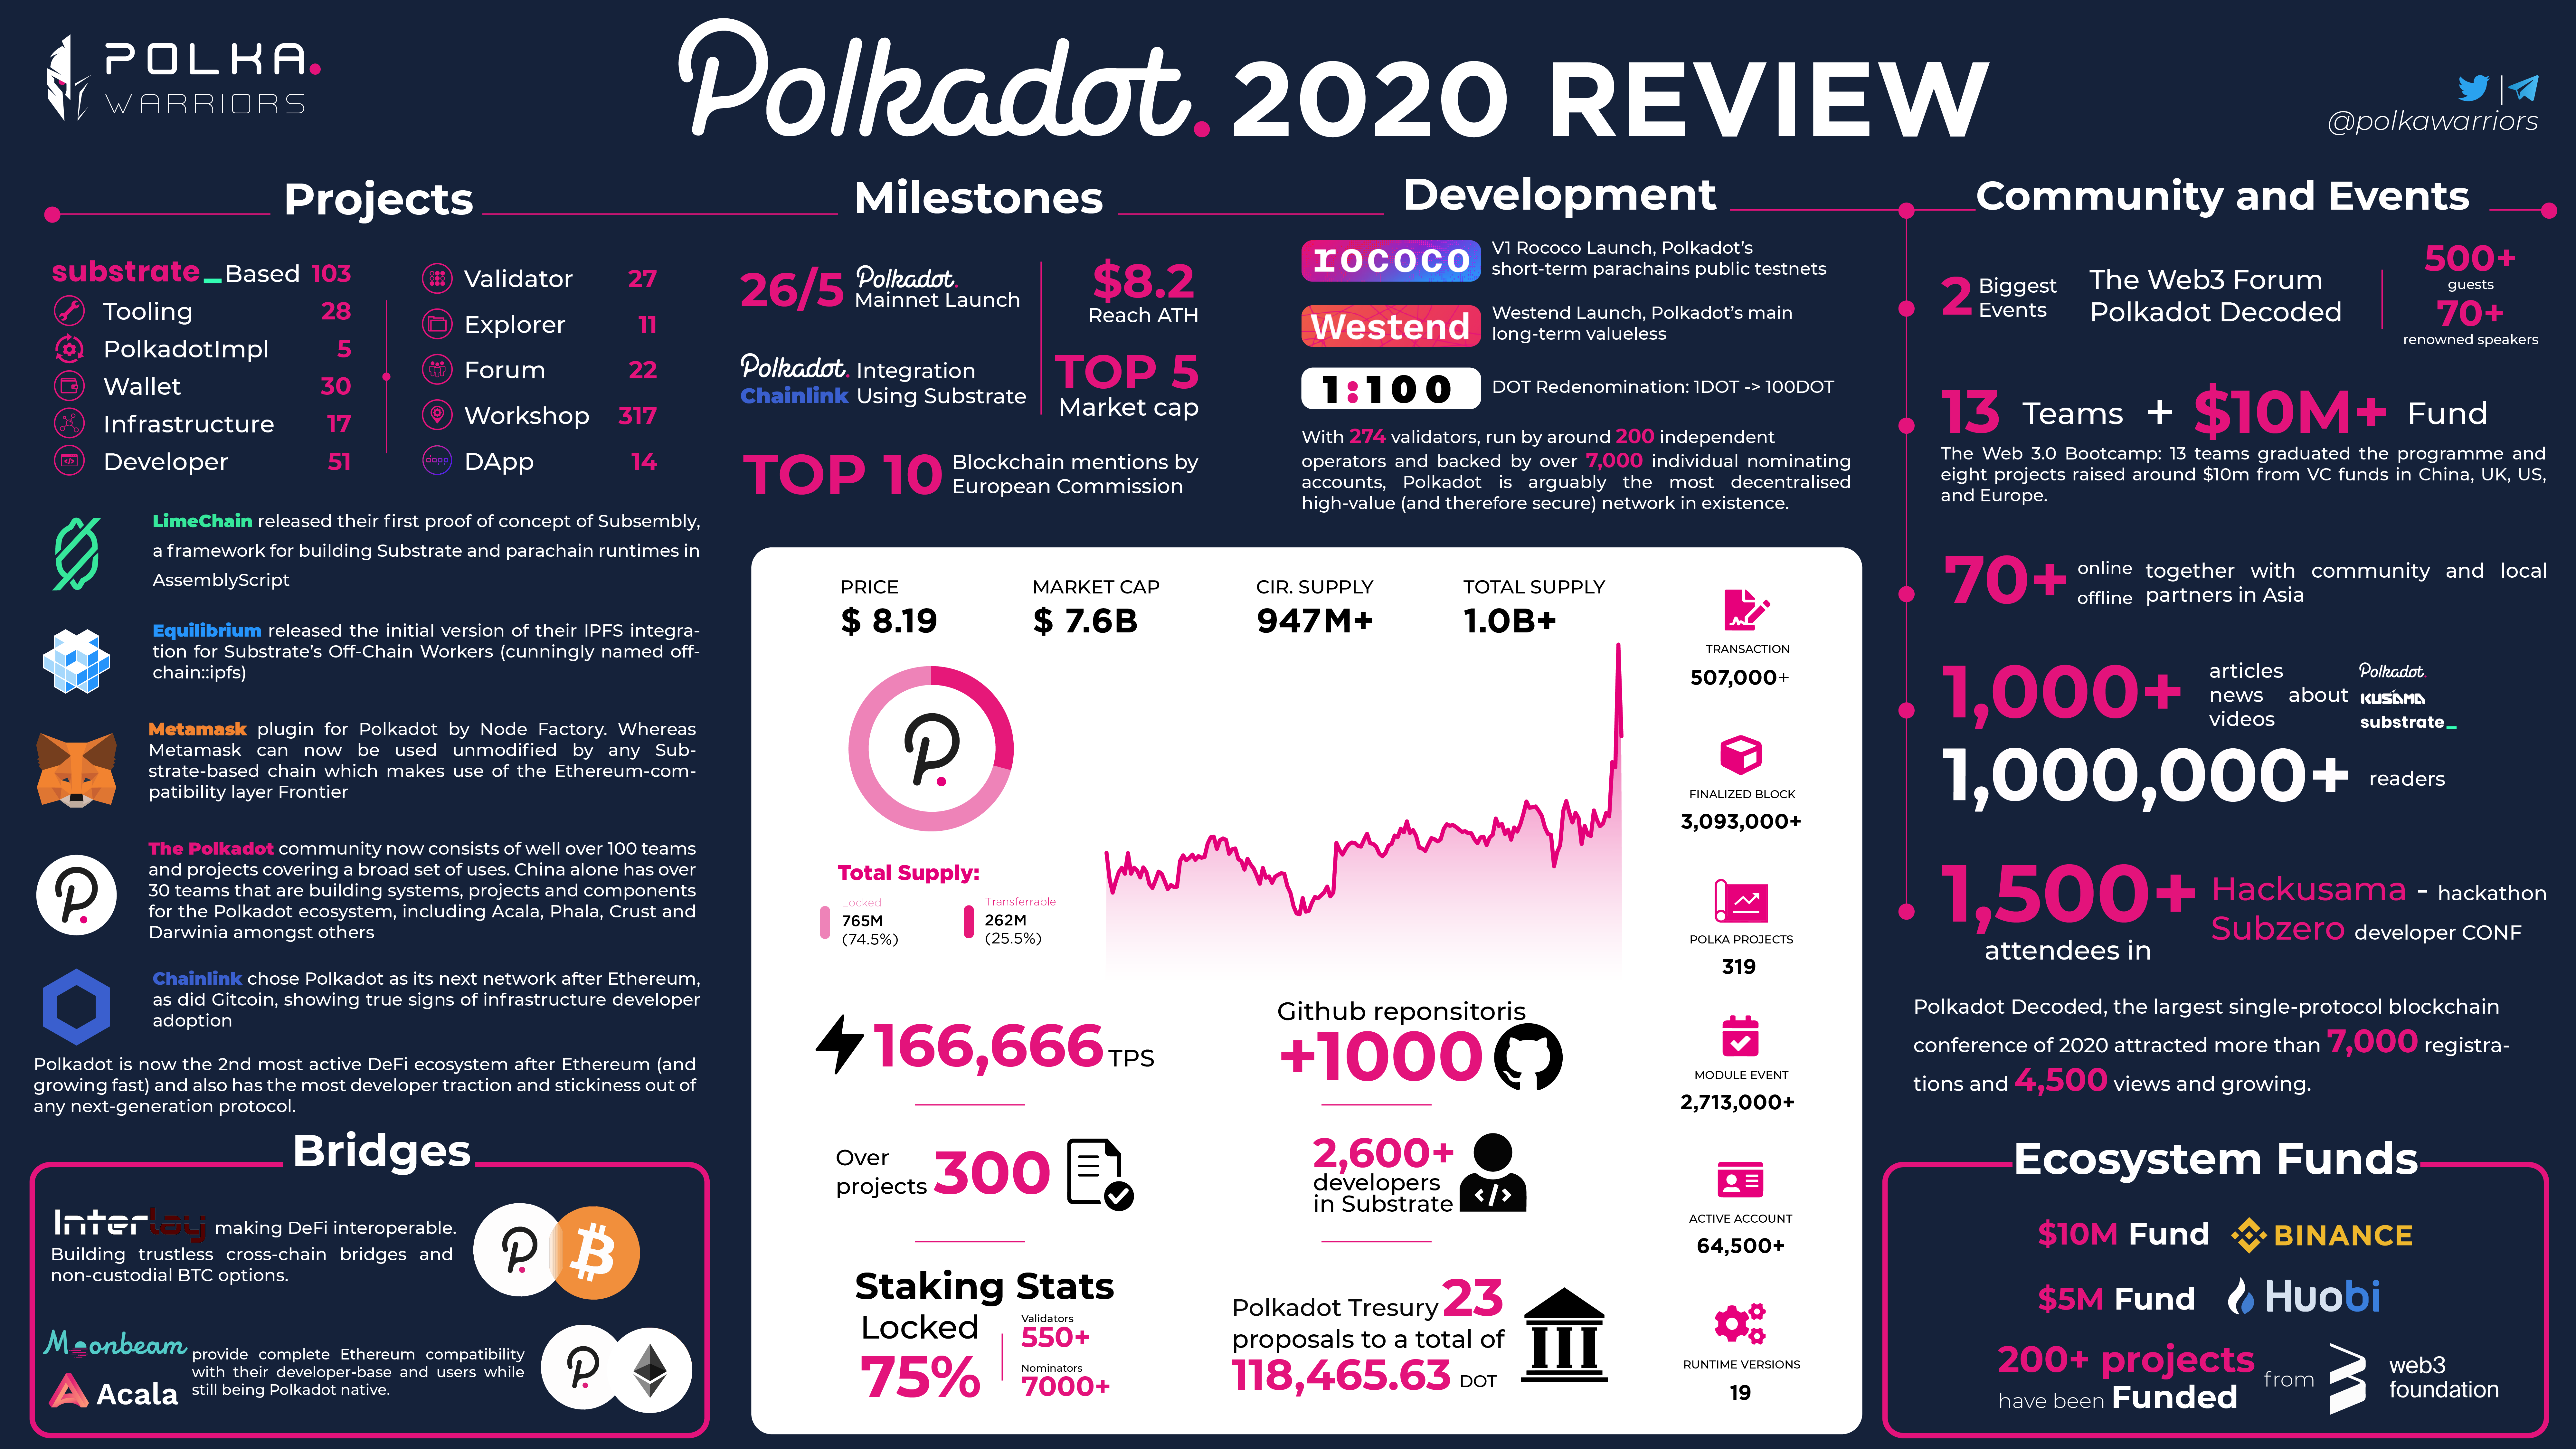 Polkadot: Một năm nhìn lại - Polkadot review 2020 - syndicator